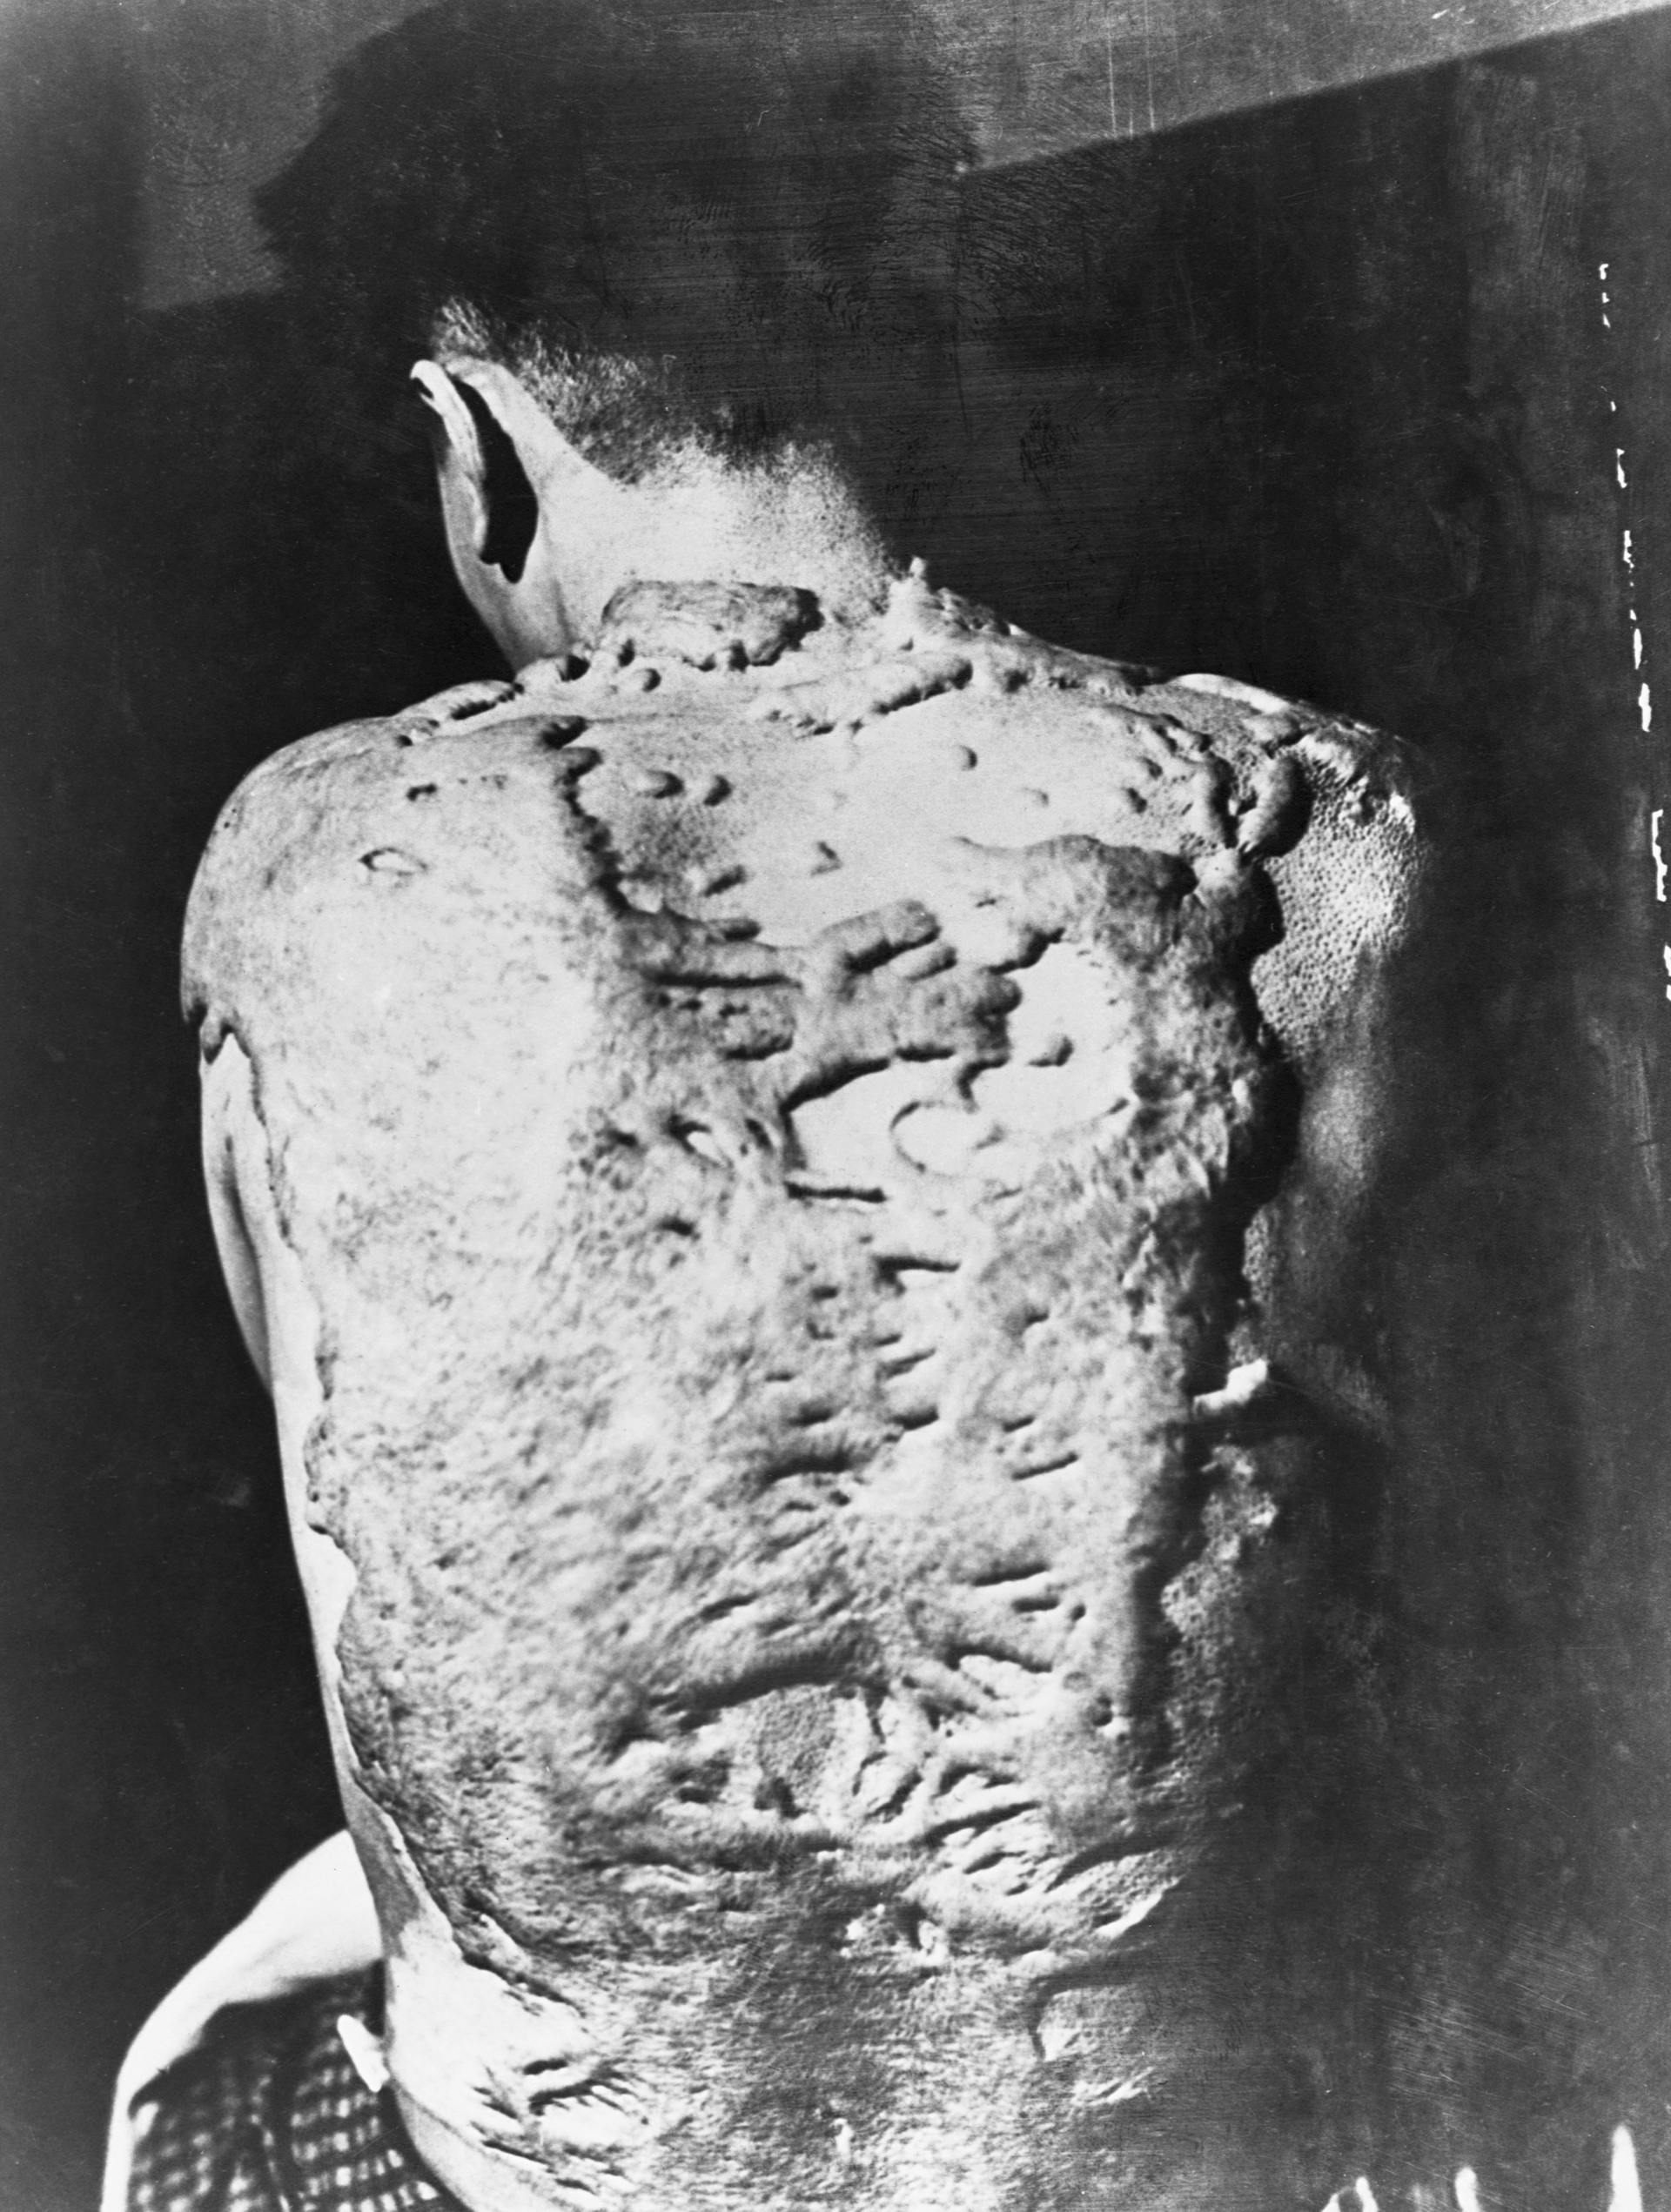 Las impactantes quemaduras en la espalda de un sobreviviente de la bomba atómica de Nagasaki. Los queloides -crecimientos densos y fibrosos que crecen sobre el tejido cicatricial- cubren todo su cuerpo (Corbis vía Getty Images)
